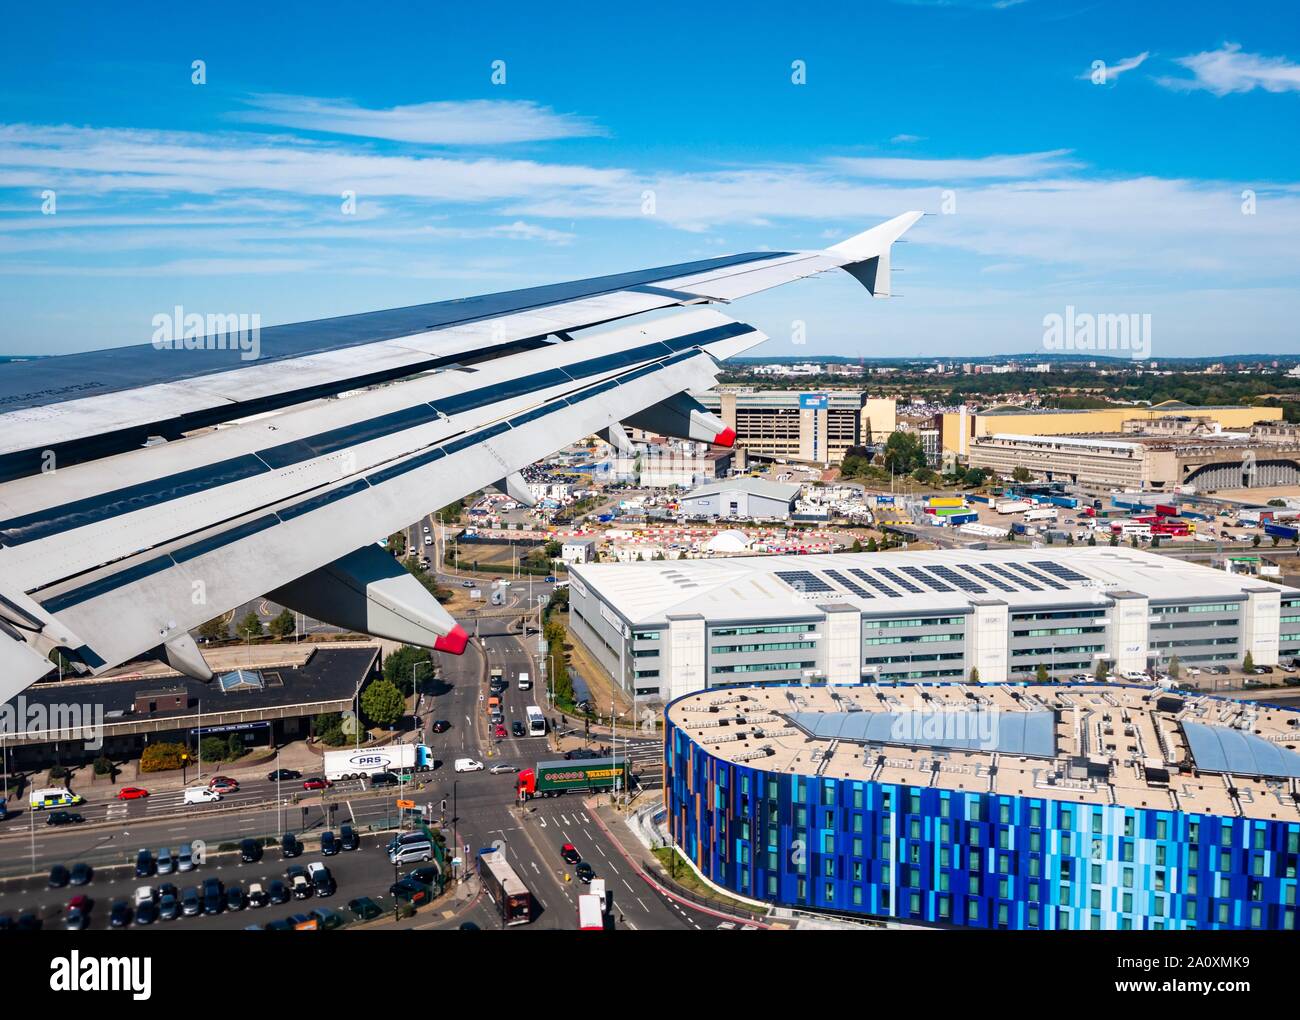 Vue depuis la fenêtre de l'avion sur le vol de l'aile dans l'aéroport de Heathrow, Londres, Angleterre, Royaume-Uni Banque D'Images